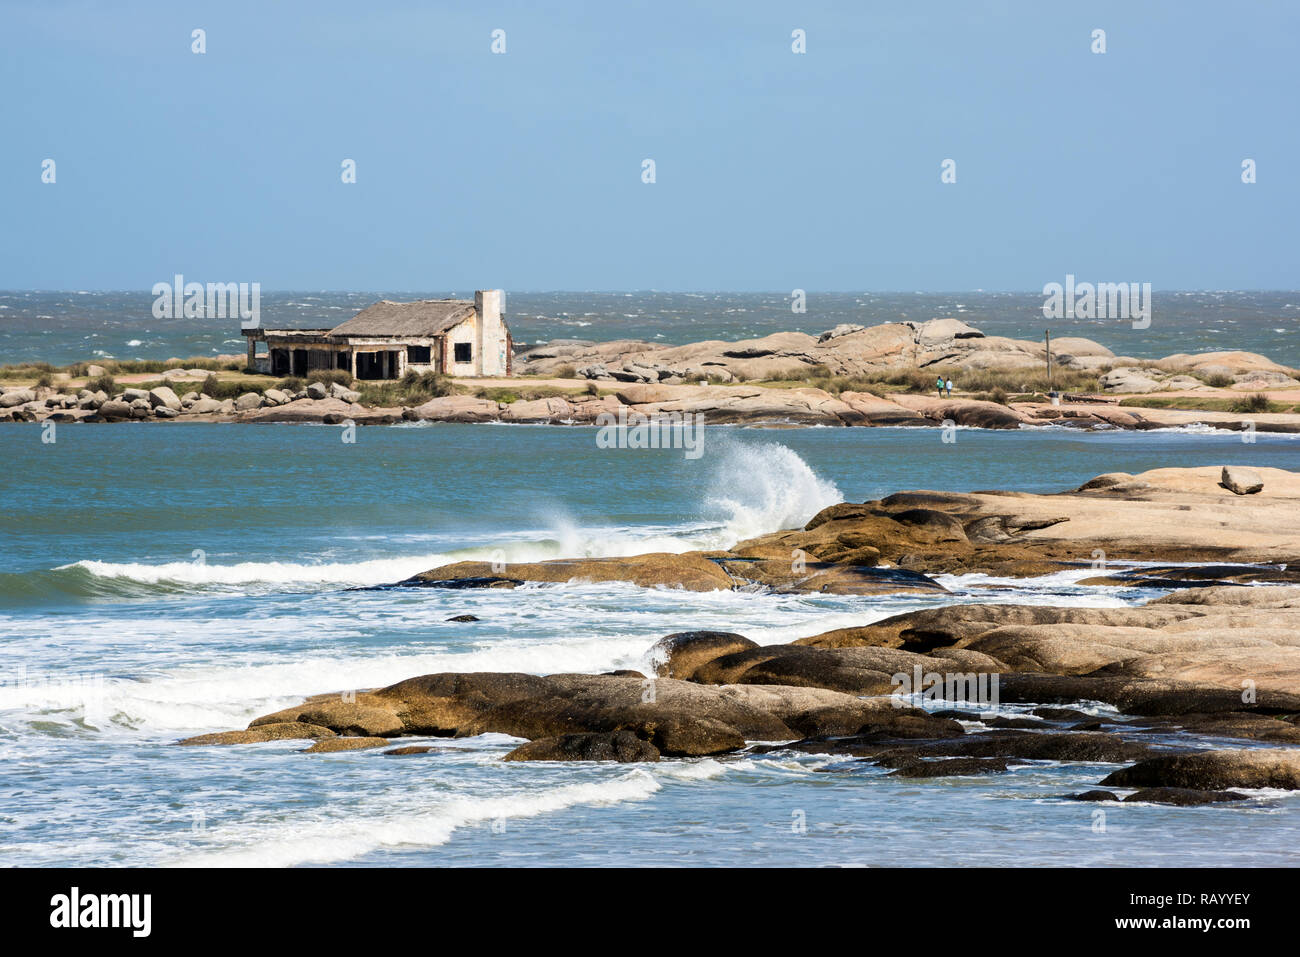 La plage de Punta del Diablo, site touristique populaire et Fisherman's place dans la Côte d'Uruguay Banque D'Images